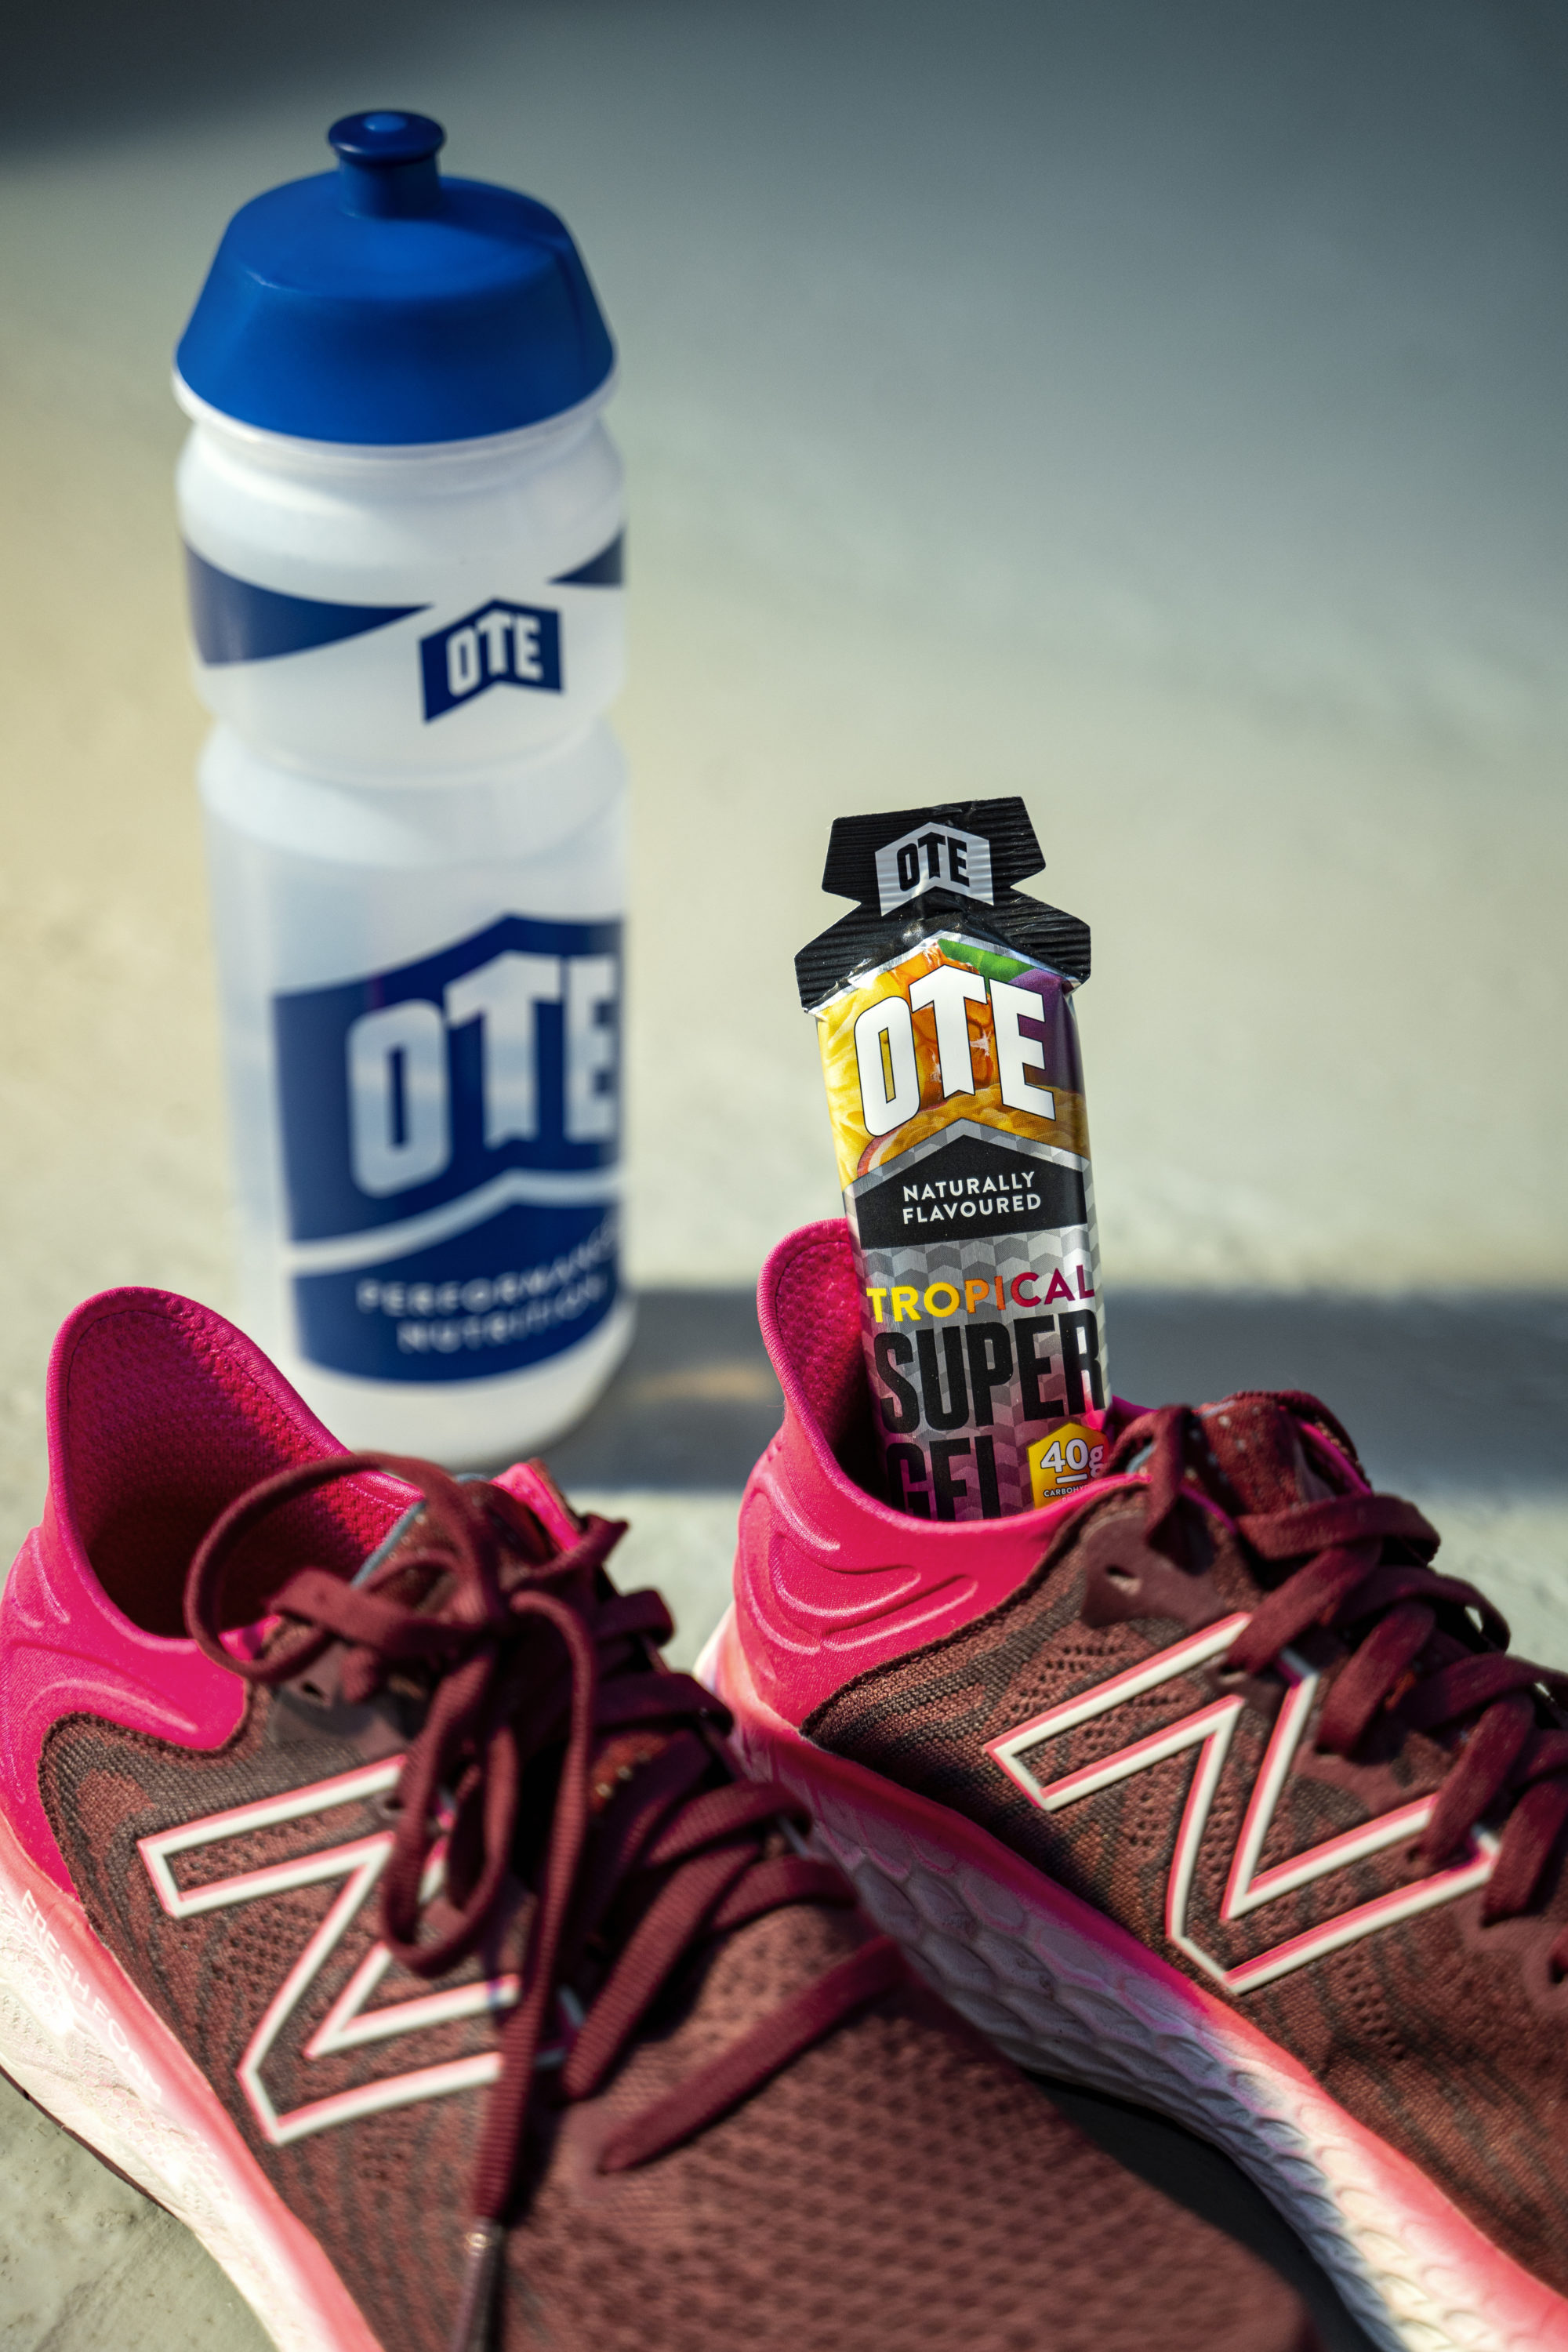 Tropical Super Gel — OTE Sports